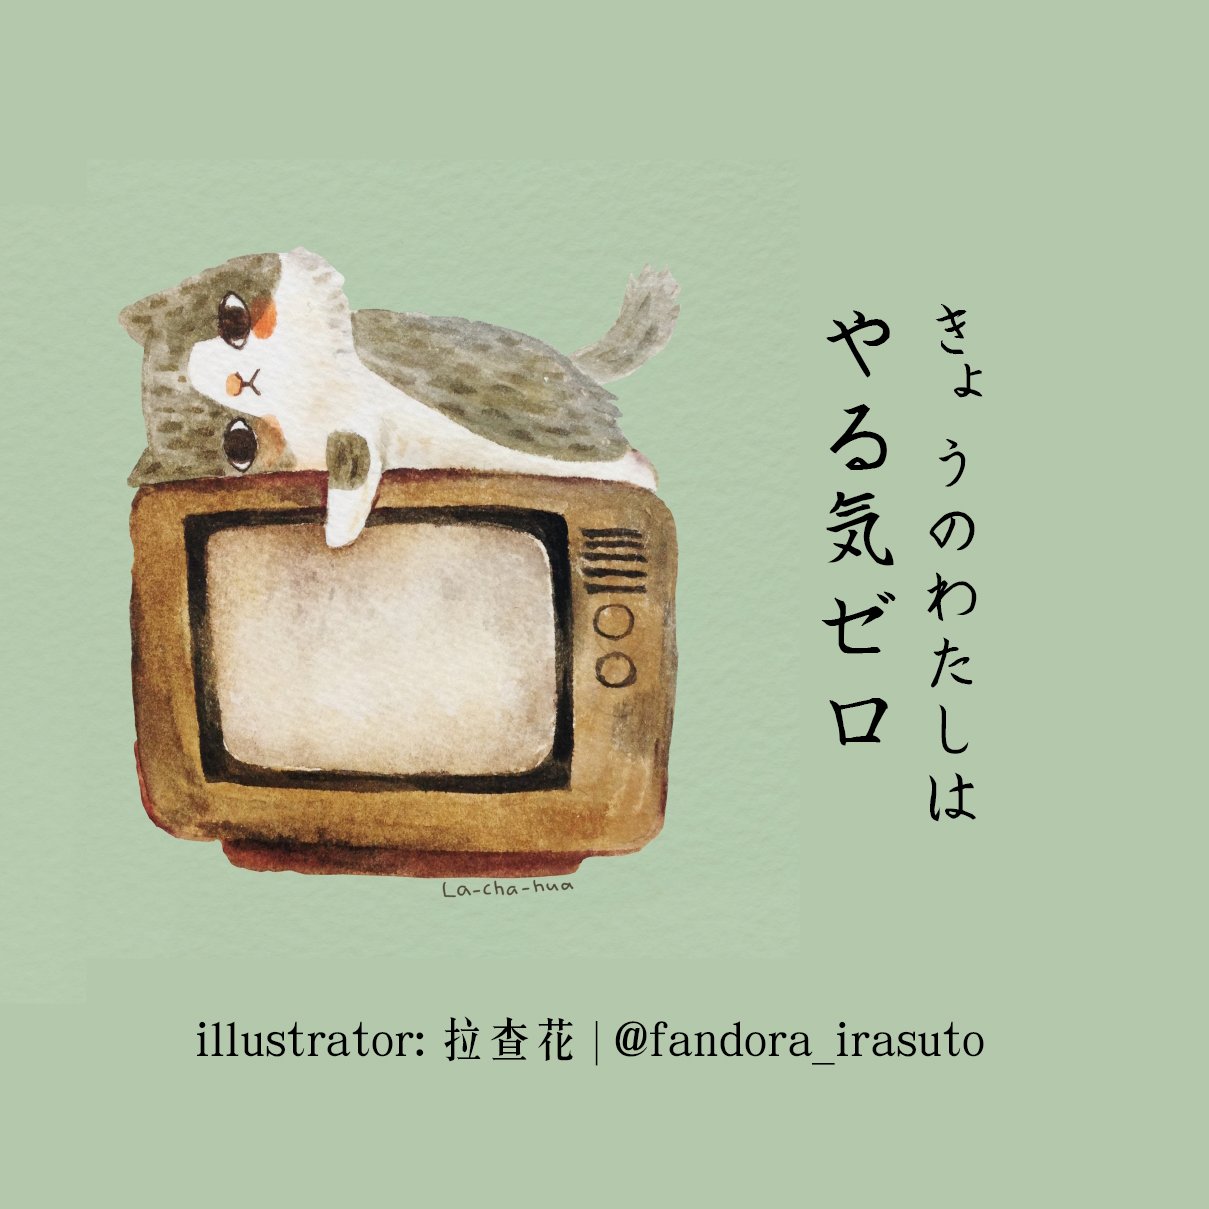 تويتر Fandora イラスト على تويتر 仕事なんてやりたくないもん イラストレーター 拉查花 ネコ やる気 ない わたしも 絵 絵描き イラスト 言葉 名言 癒される カワイイ かわいい ねこ 猫 猫部 Fandora T Co Xaauhxjngi